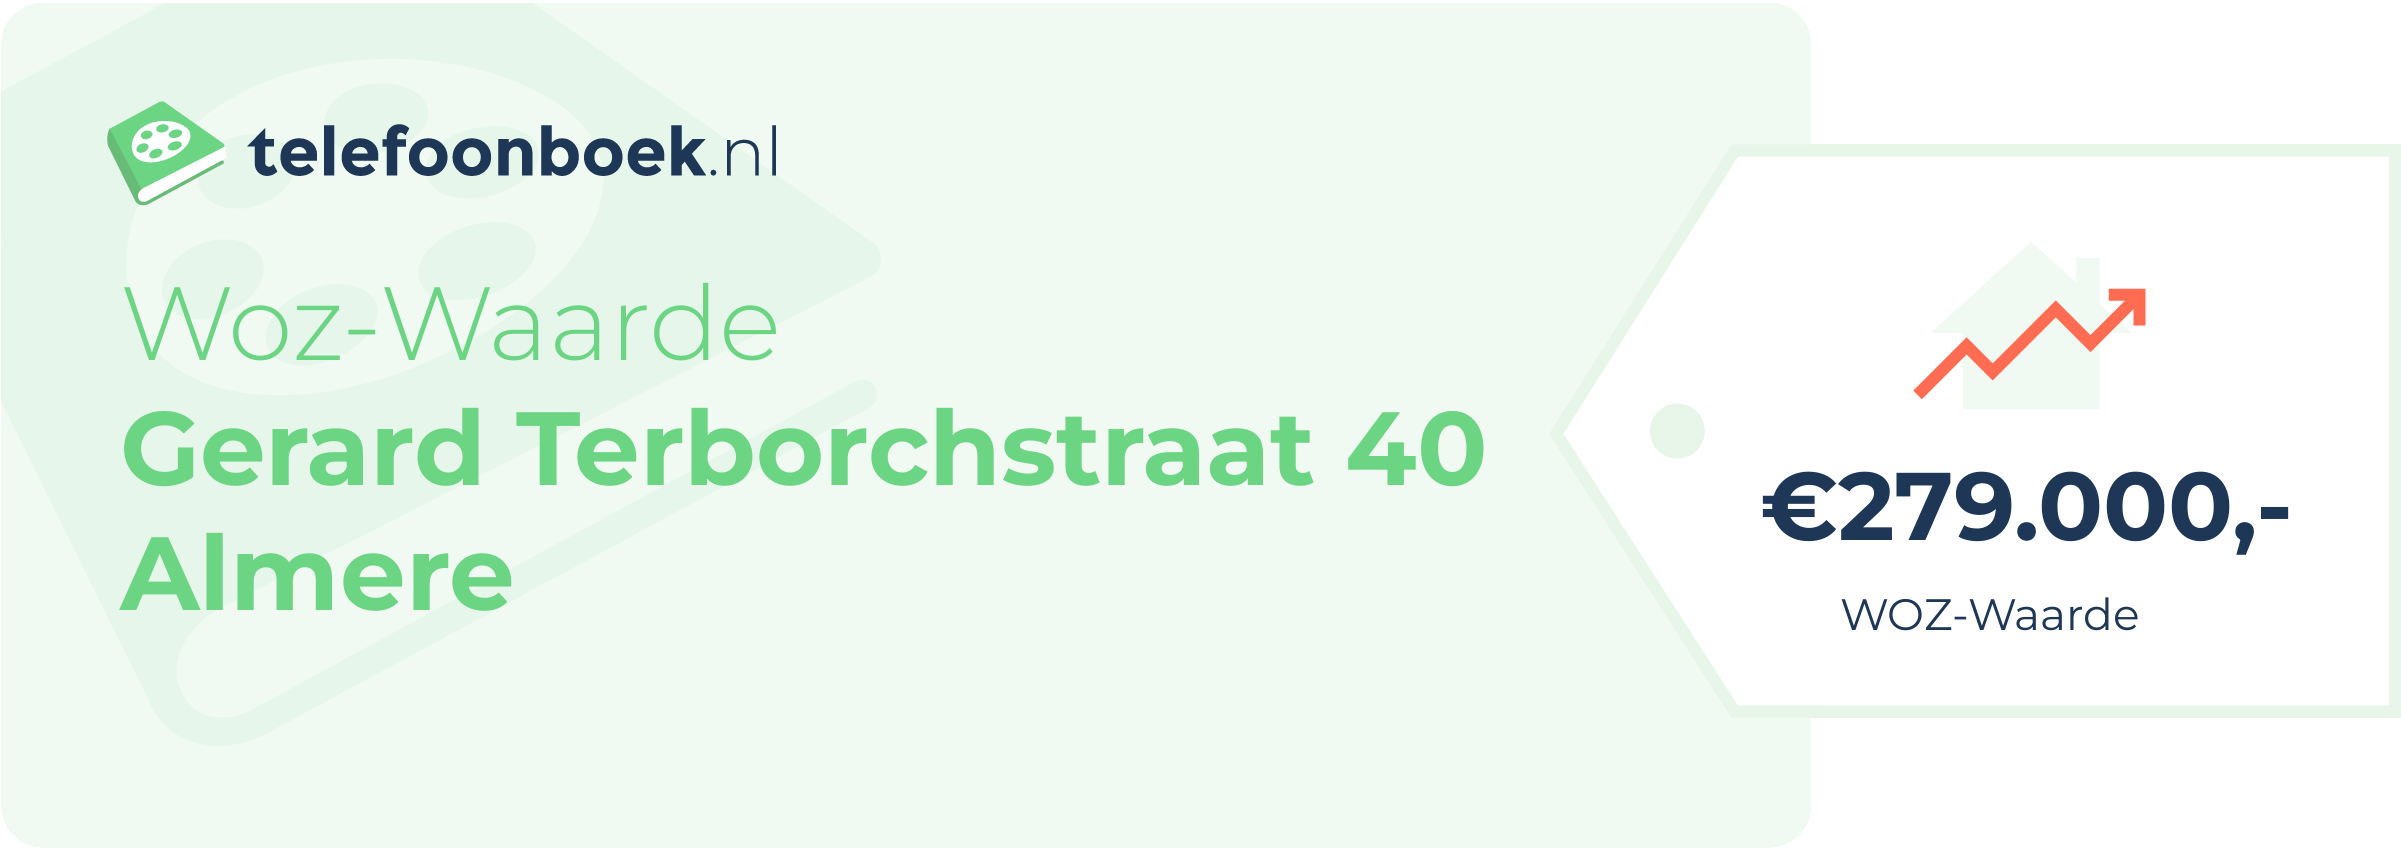 WOZ-waarde Gerard Terborchstraat 40 Almere